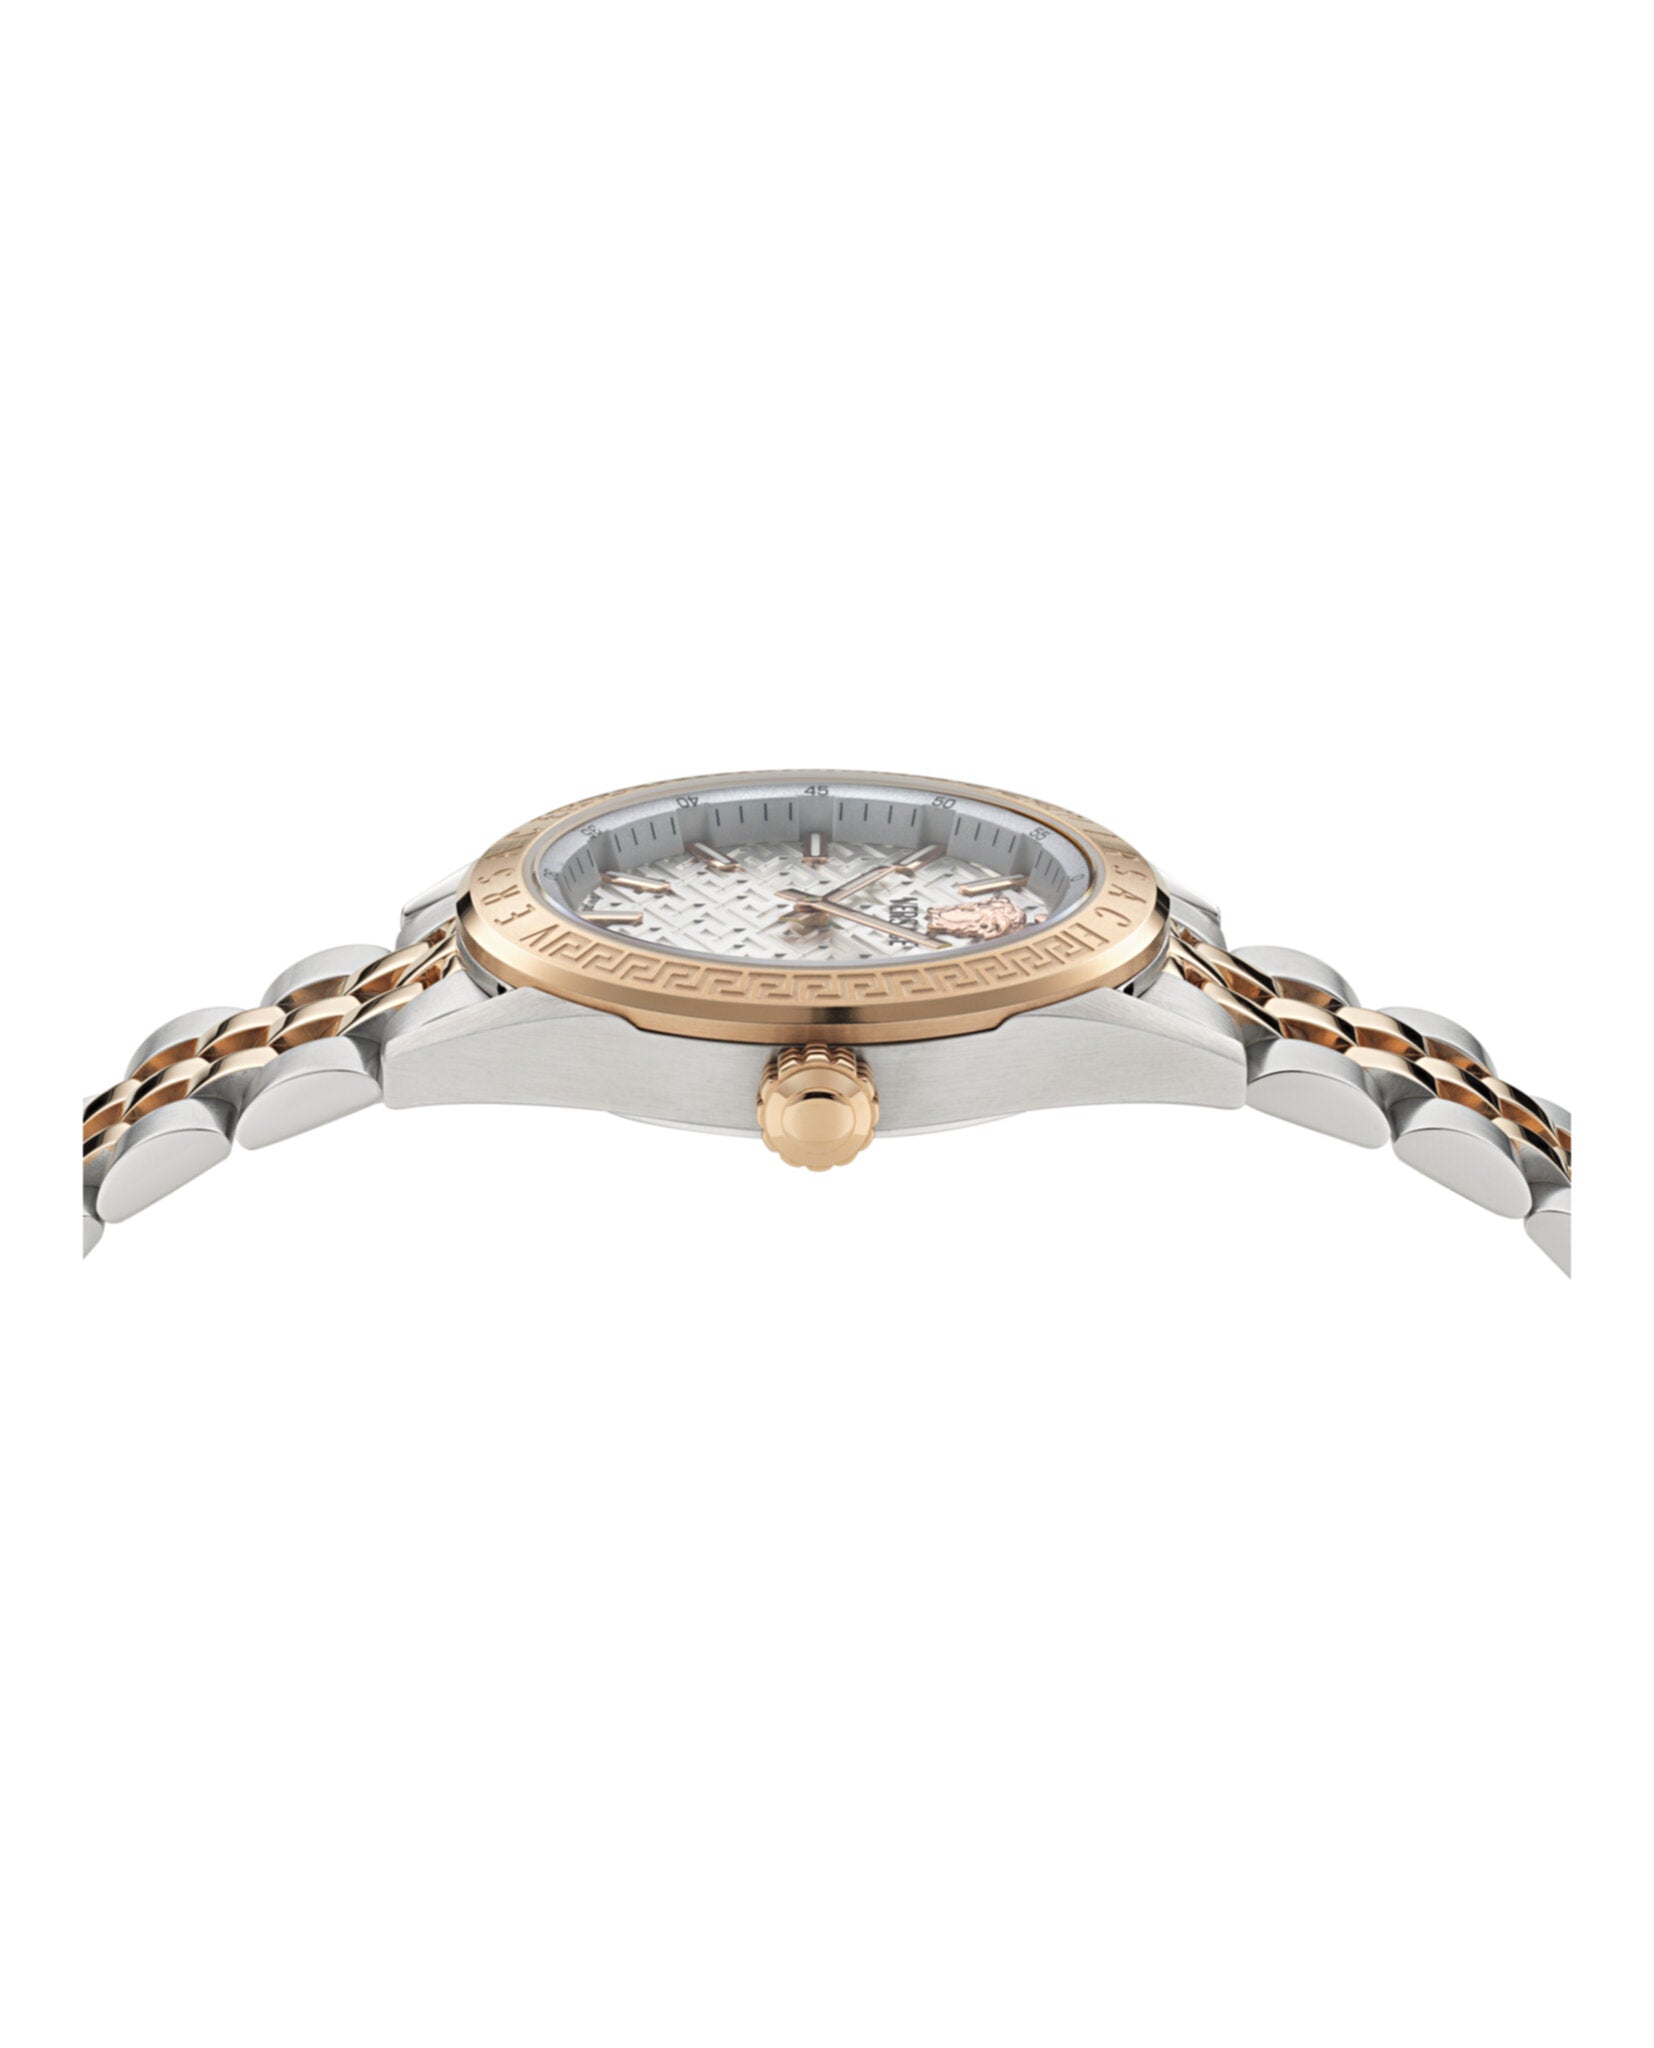 V-Code Bracelet Watch